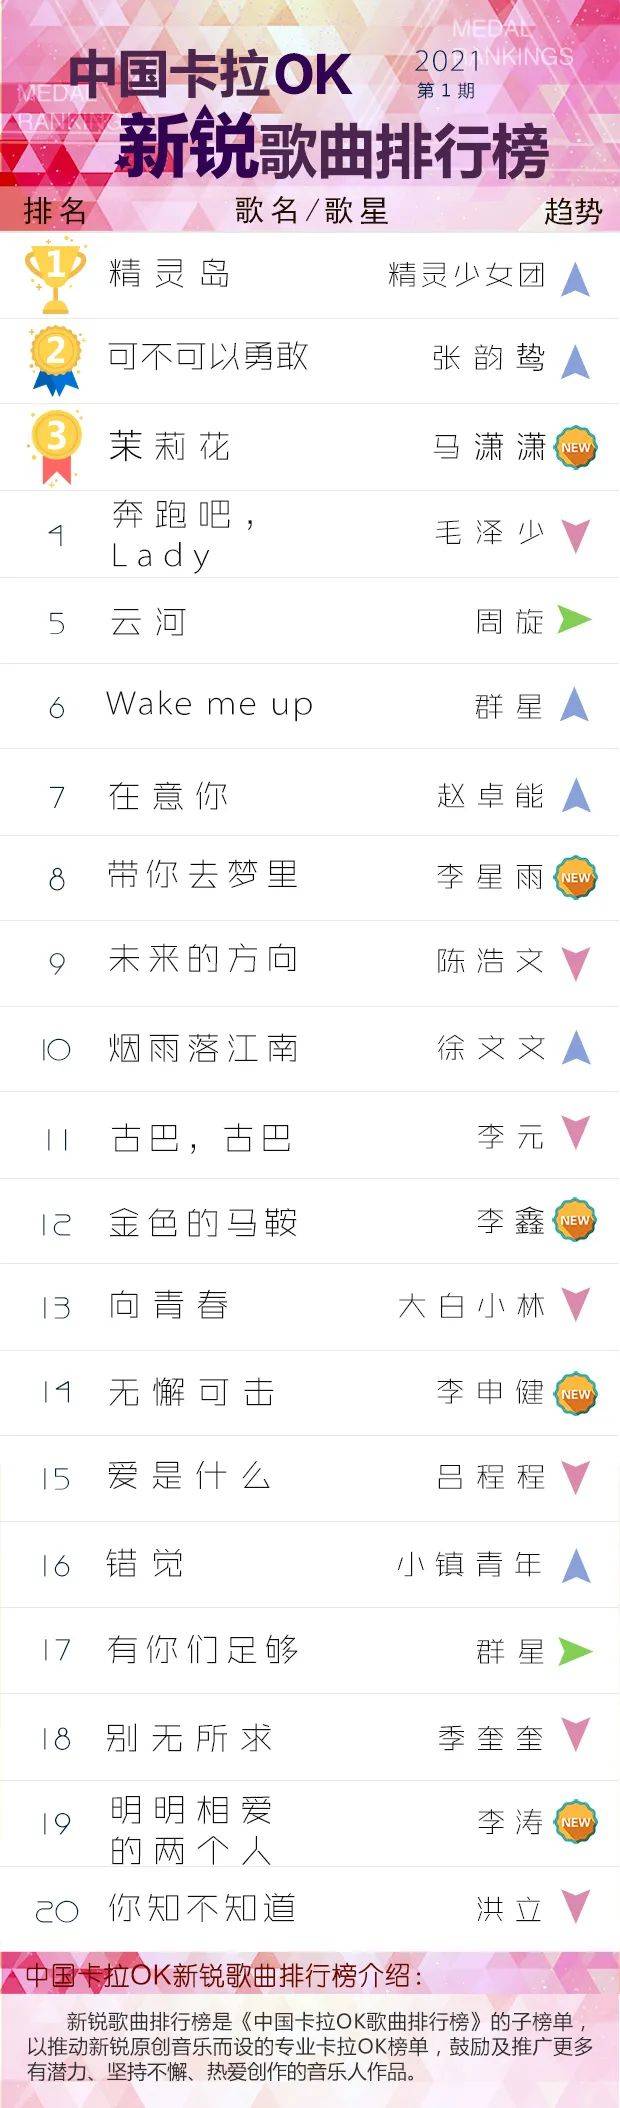 歌曲推荐排行榜_中国歌曲音乐排行榜